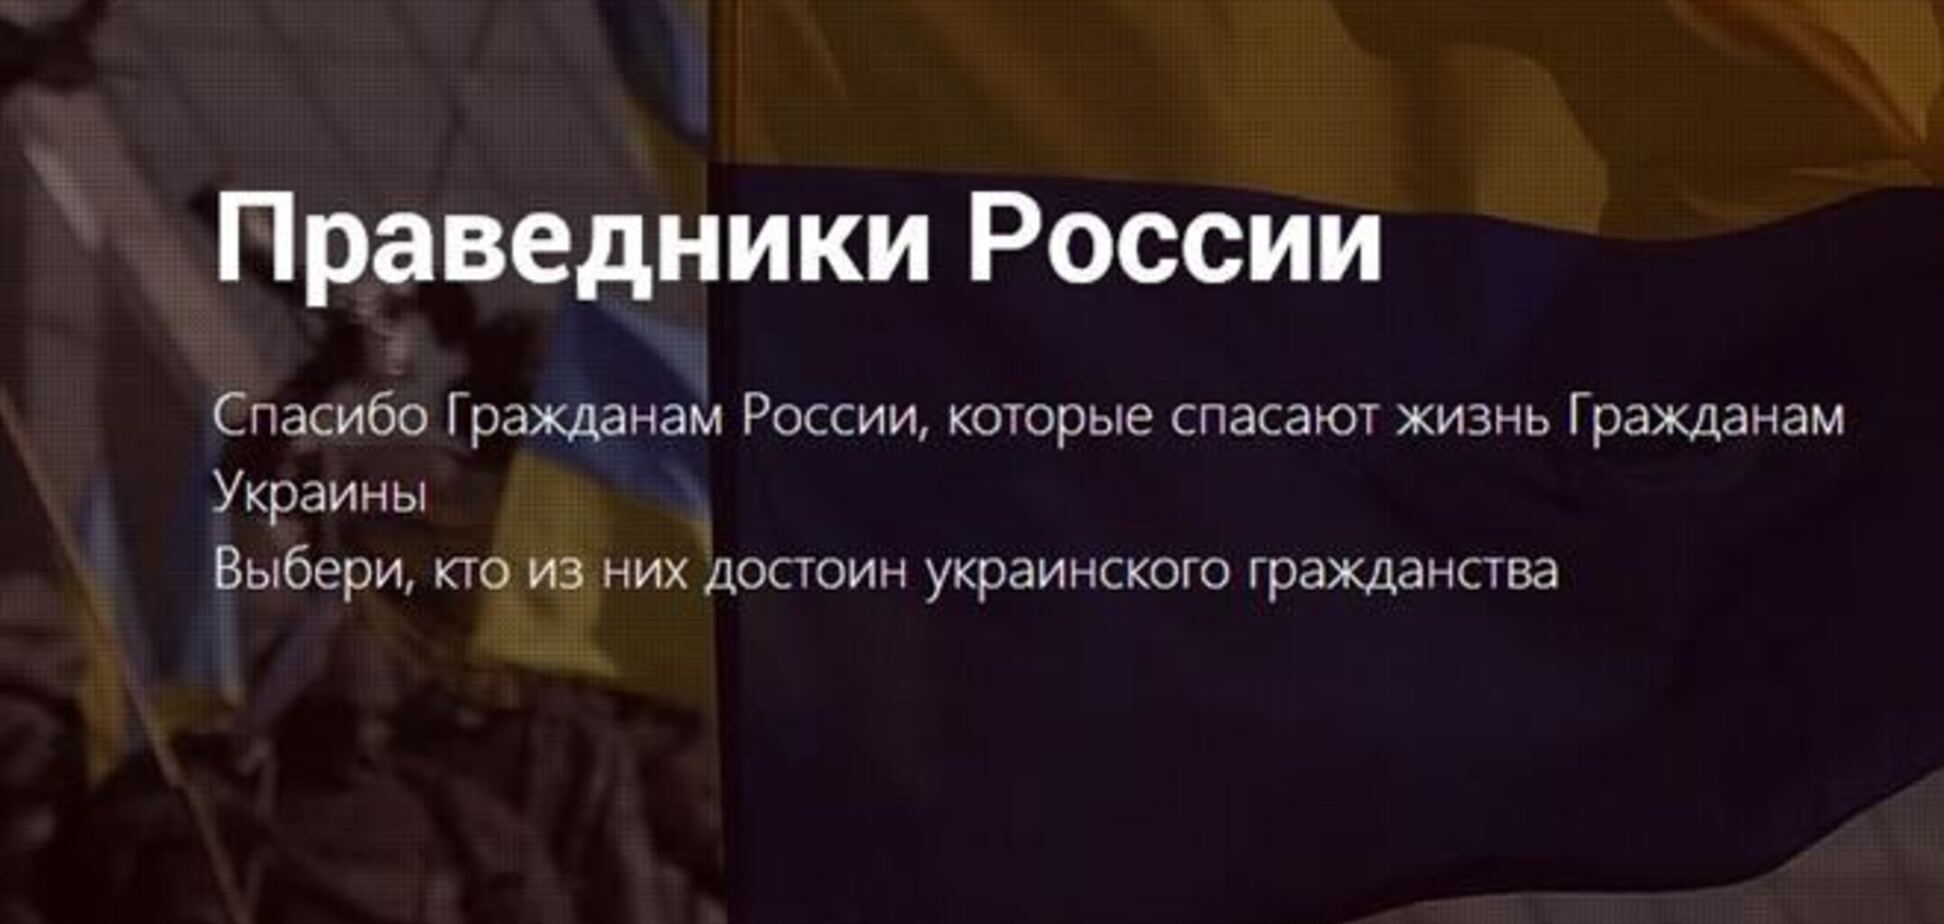 Українці створили сайт 'Праведники Росії': у списку росіяни-друзі України